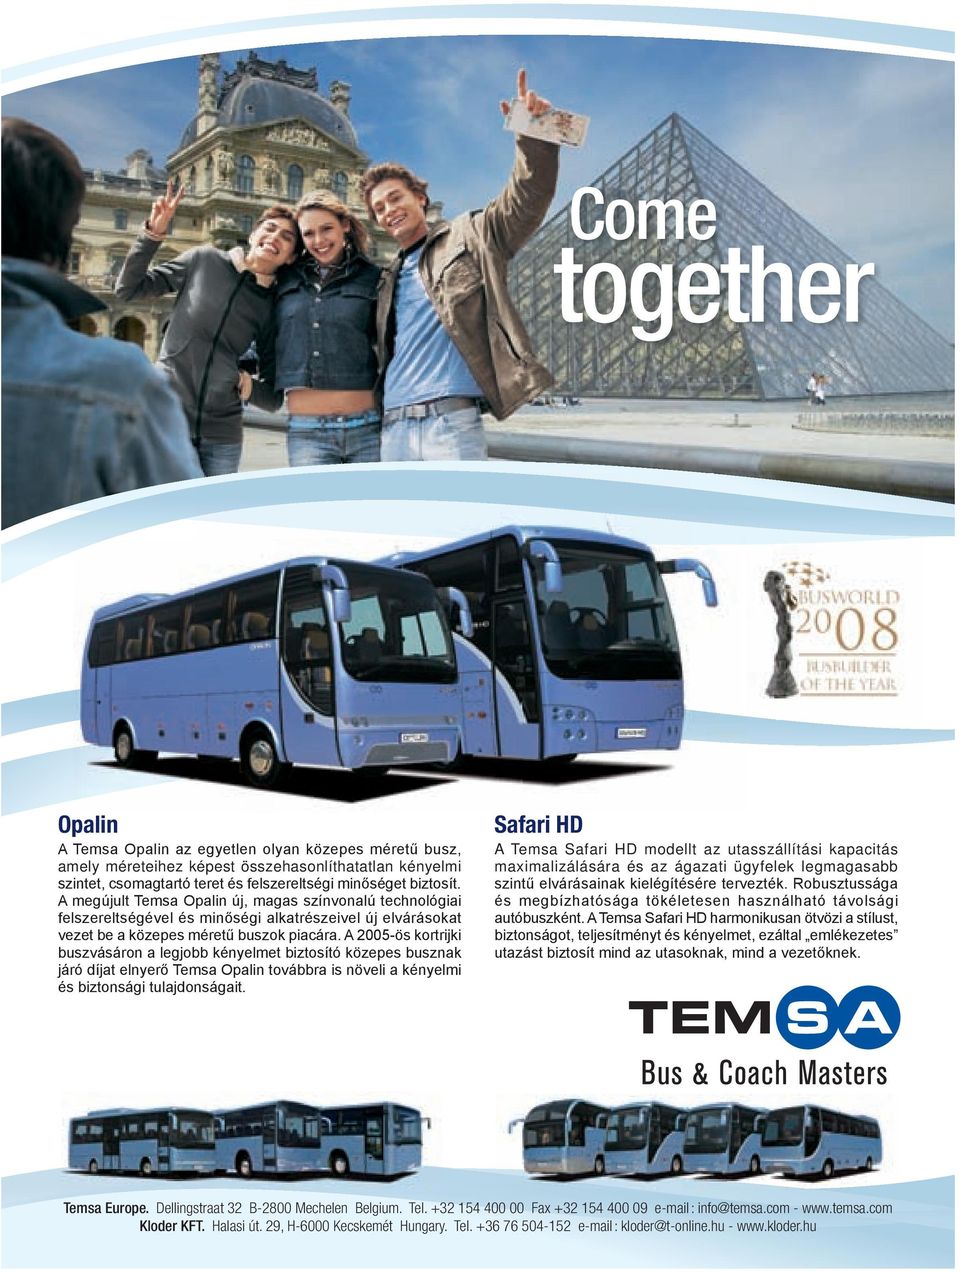 A 2005-ös kortrijki buszvásáron a legjobb kényelmet biztosító közepes busznak járó díjat elnyerő Temsa Opalin továbbra is növeli a kényelmi és biztonsági tulajdonságait.